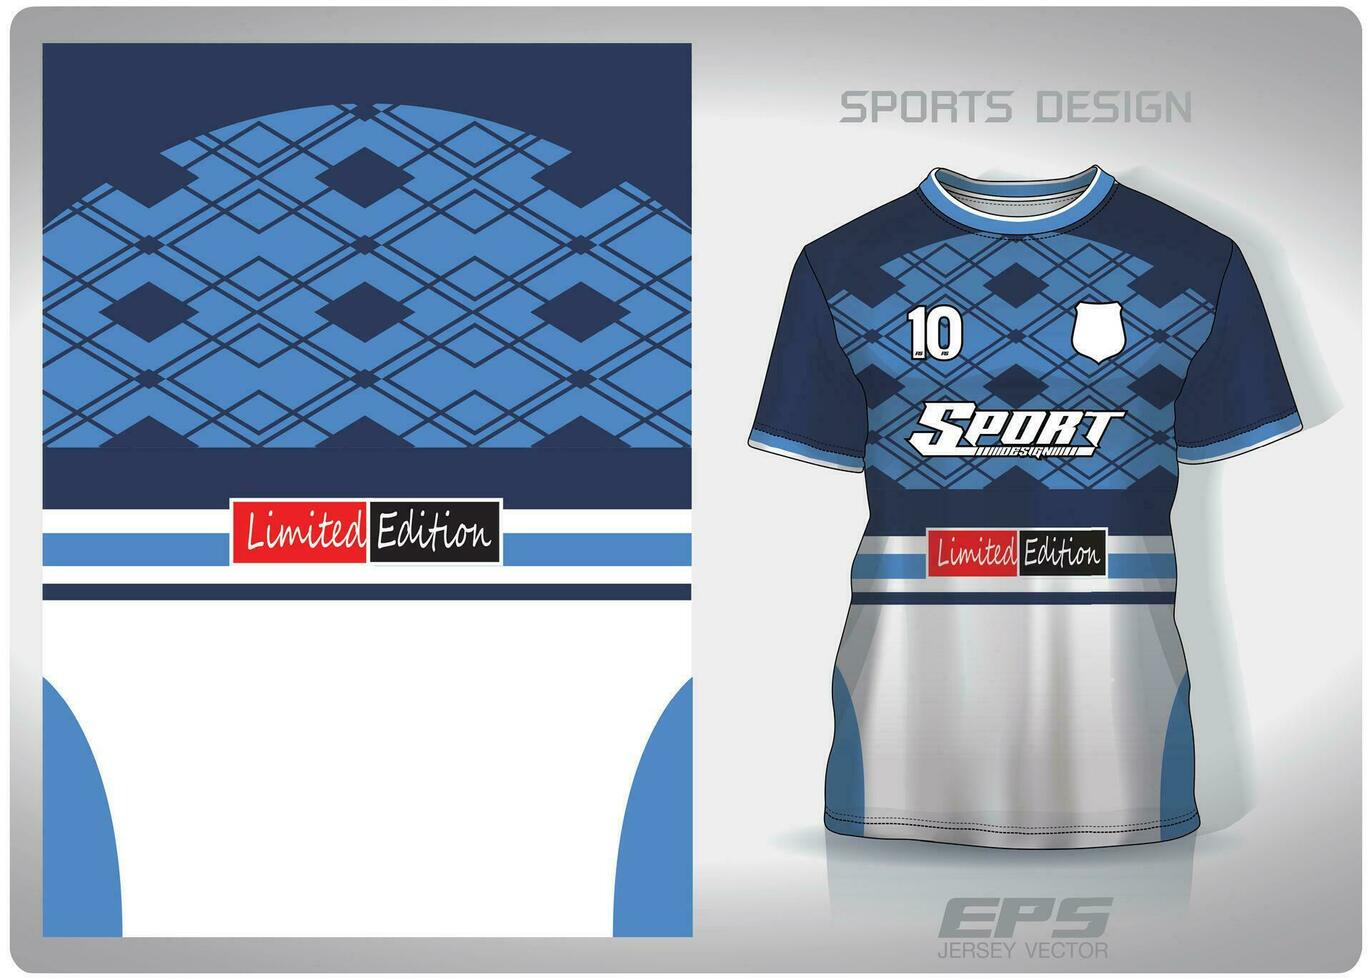 vektor sporter skjorta bakgrund bild.blå fyrkant turkos mönster design, illustration, textil- bakgrund för sporter t-shirt, fotboll jersey skjorta